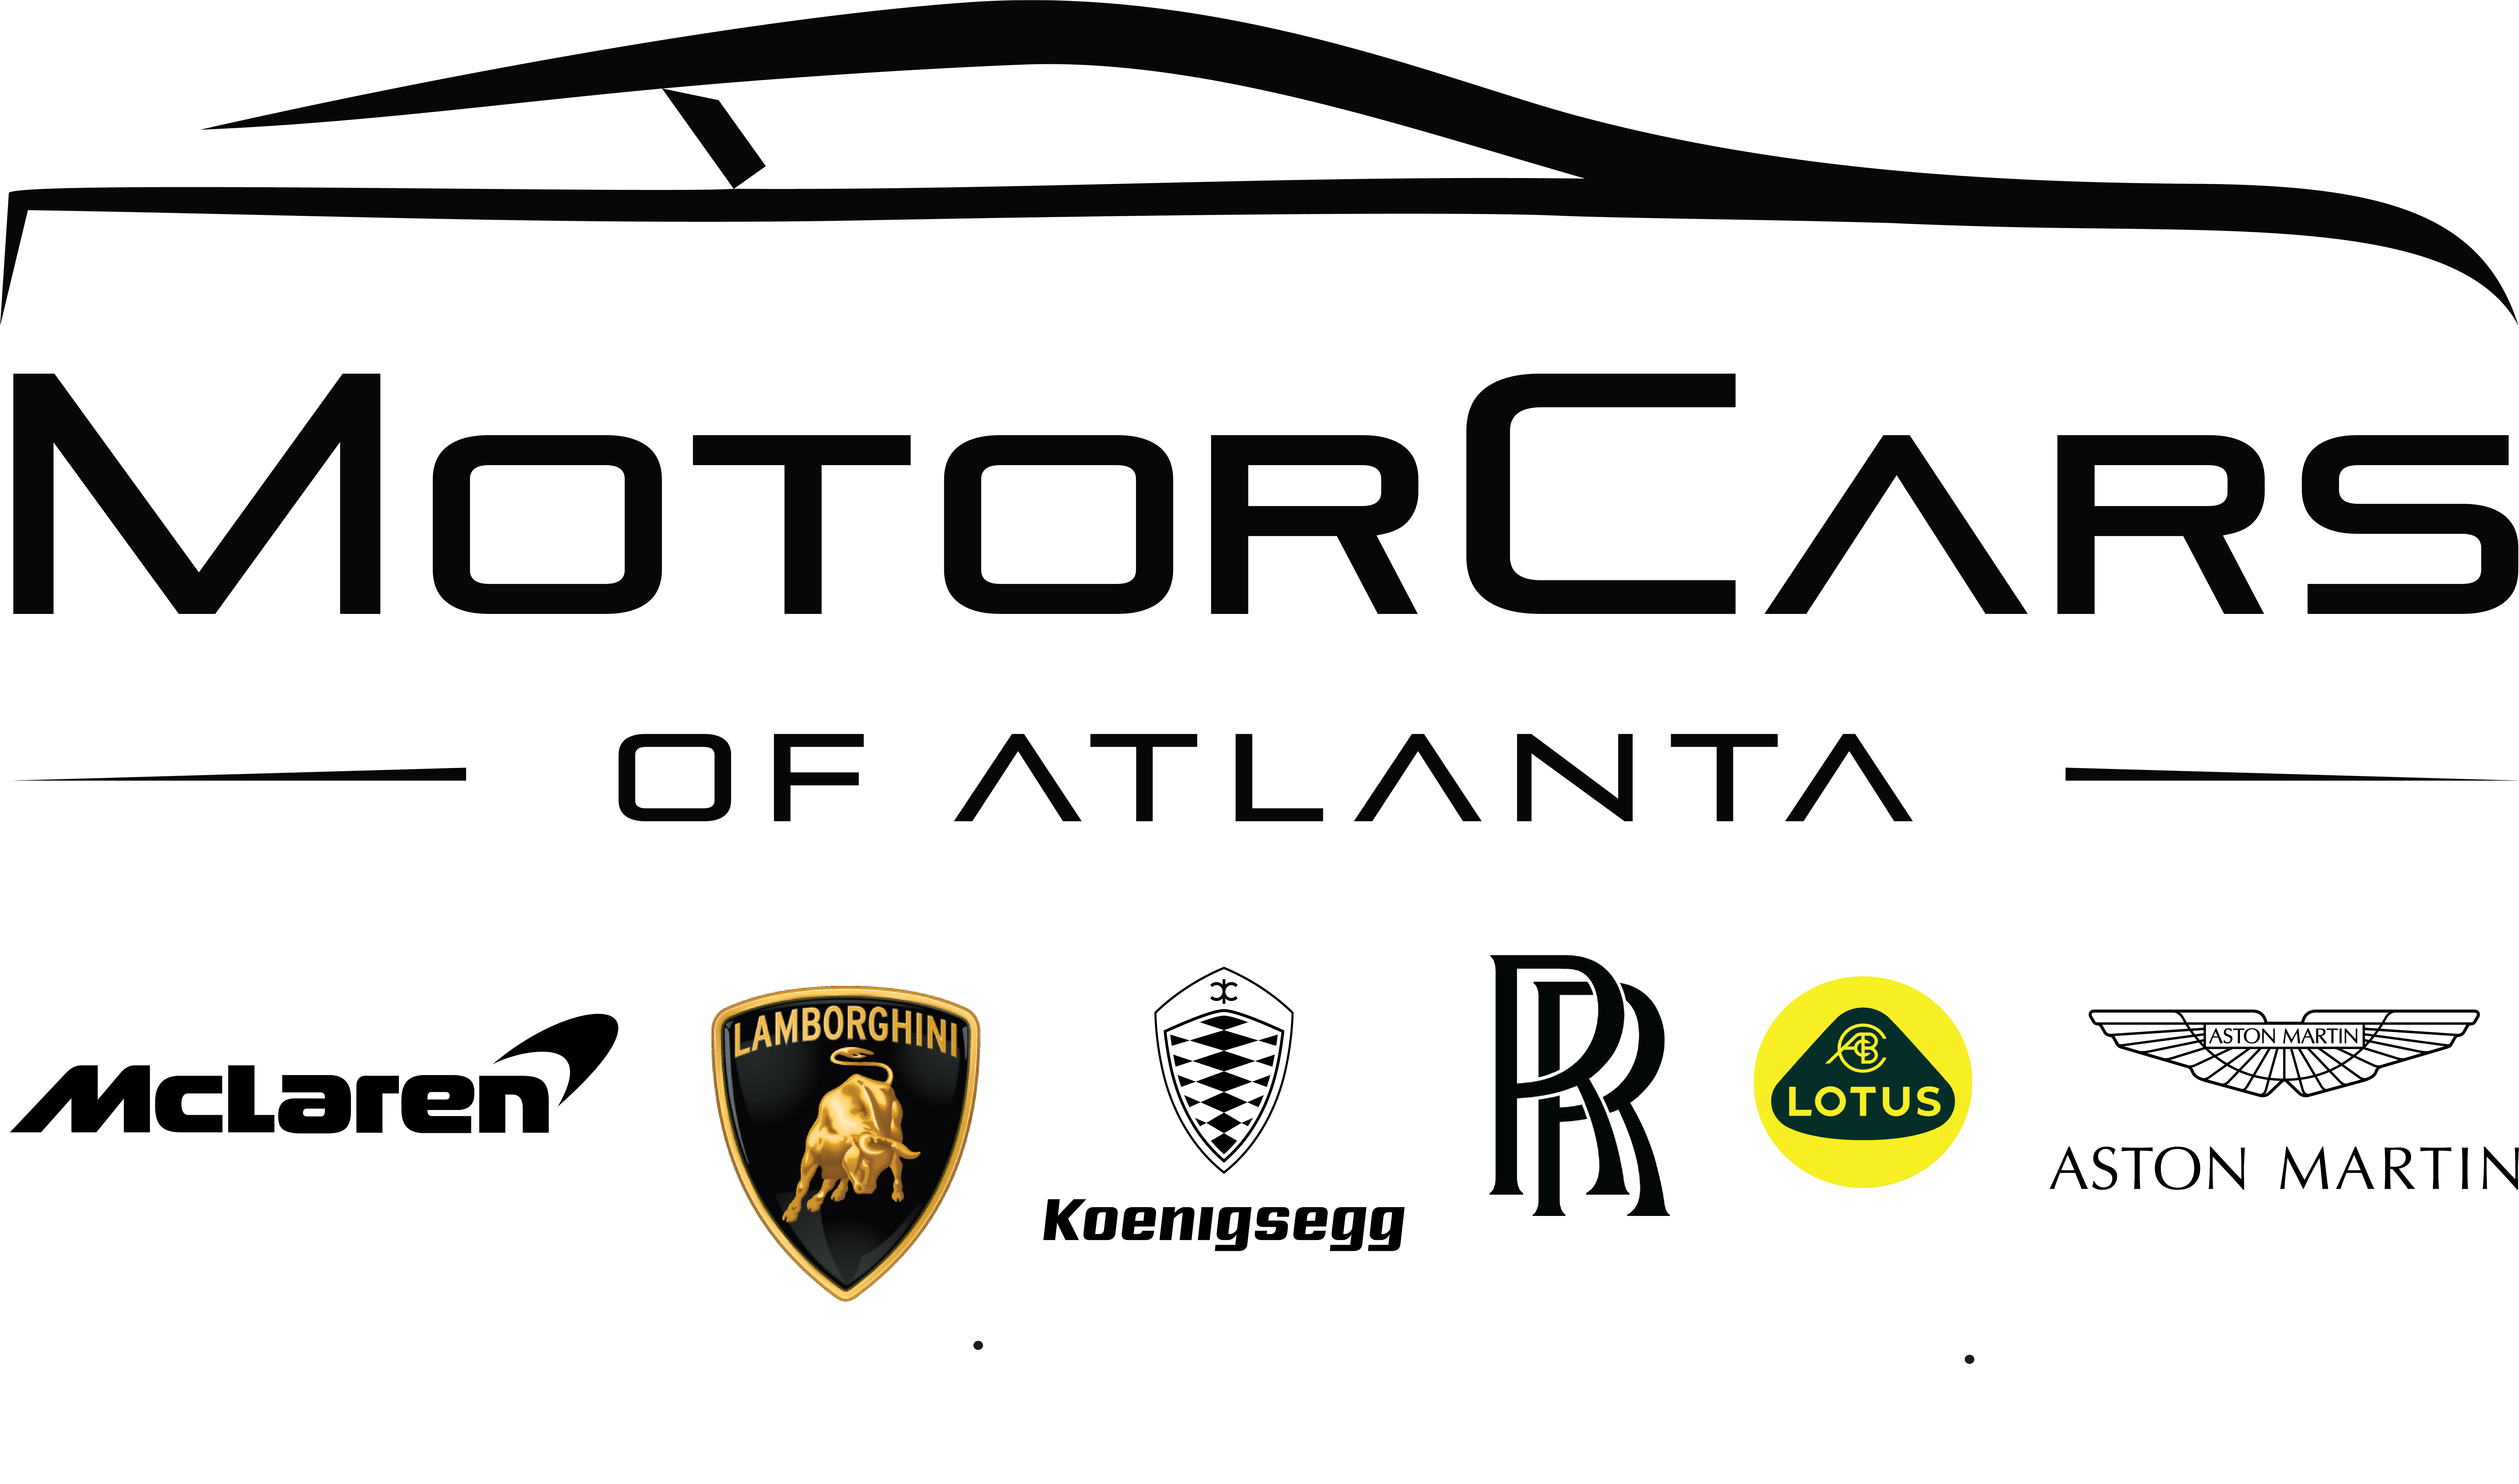 Motorcars of Atlanta